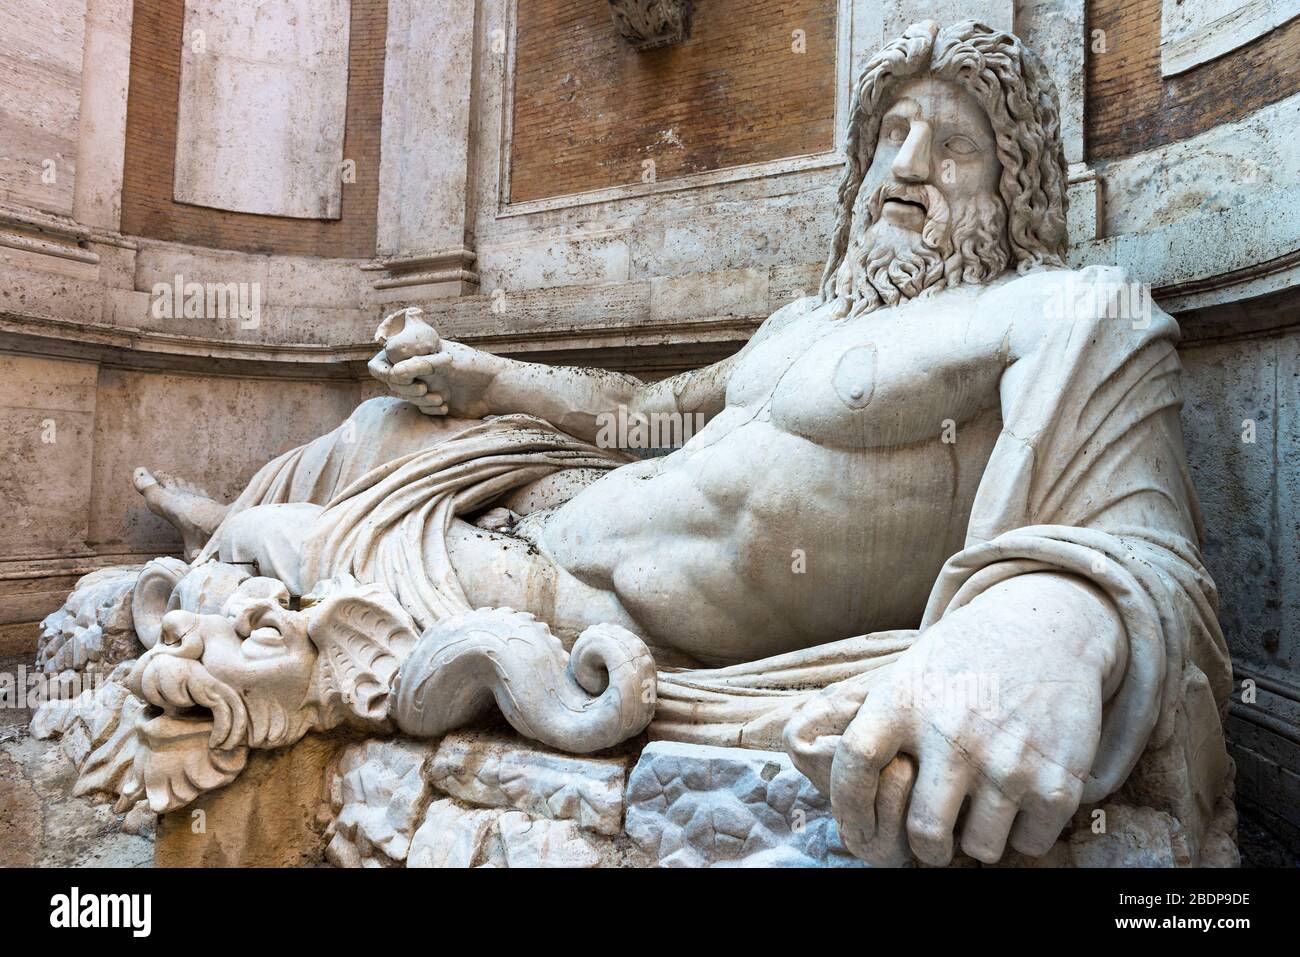 Marforio ou Oceanus dans le Palazzo Nuovo, dans les Musées du Capitole, Rome, Italie Banque D'Images